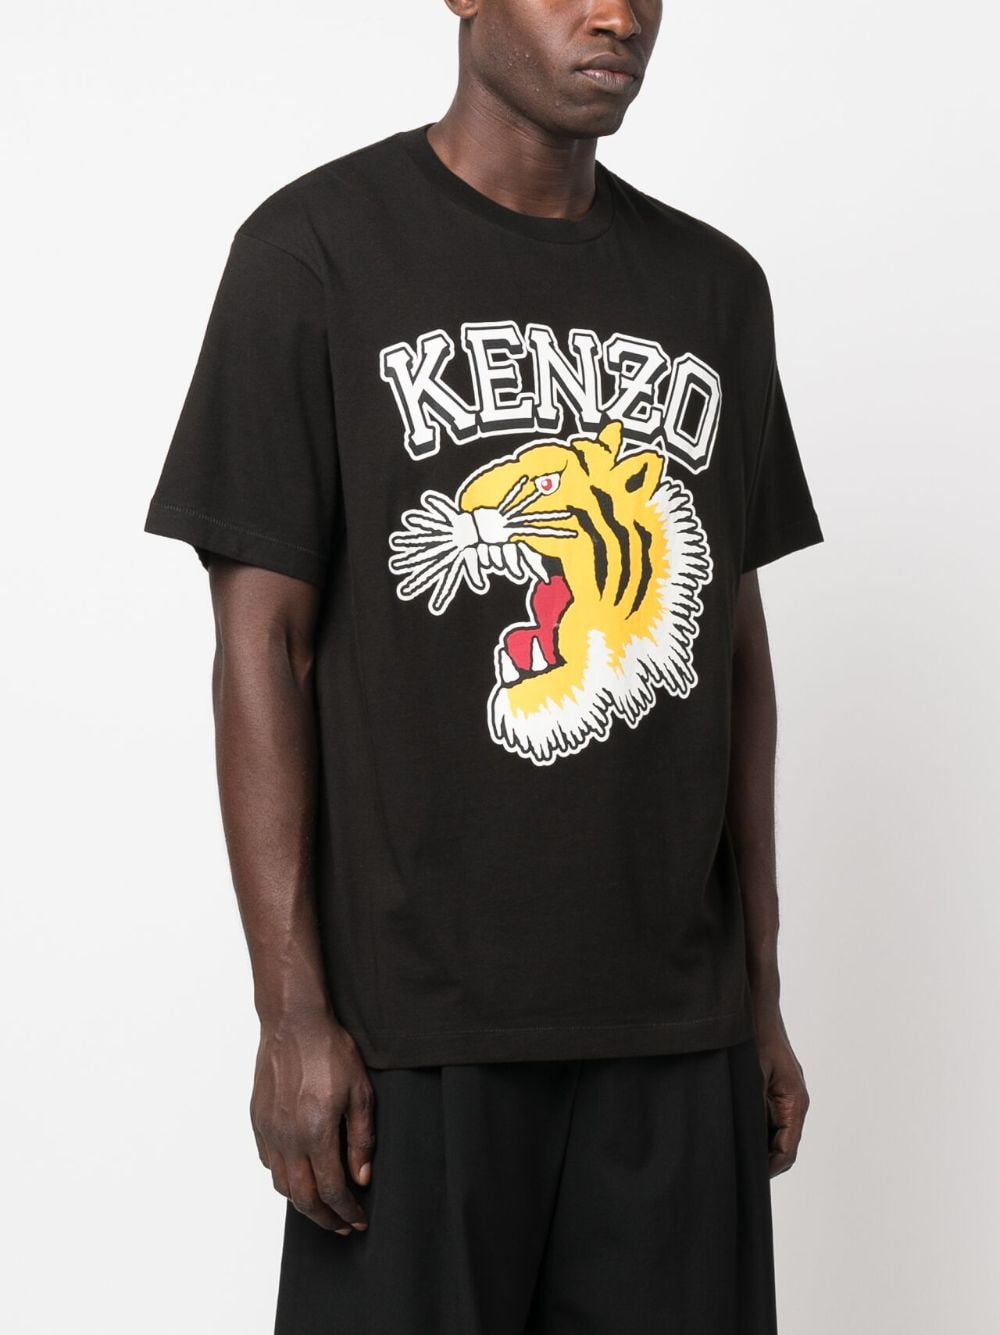 Kenzo T-shirt Black imprimé Tiger - Lothaire